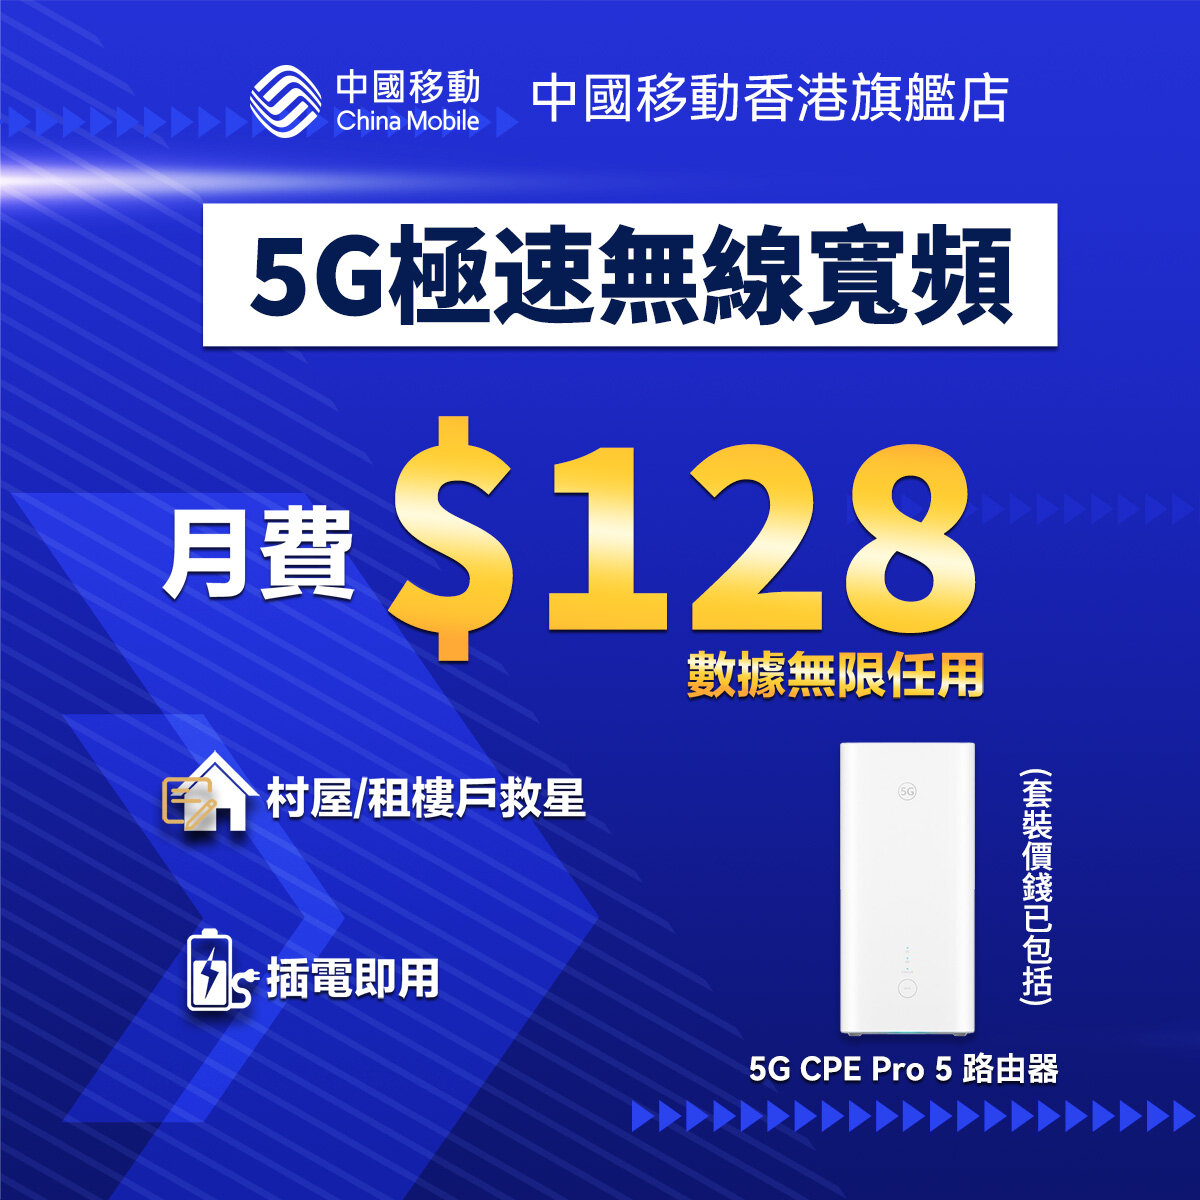 5G CPE Pro 5 路由器 無線家居寬頻套裝 - 5G家居寬頻優惠 (中國移動香港推介)